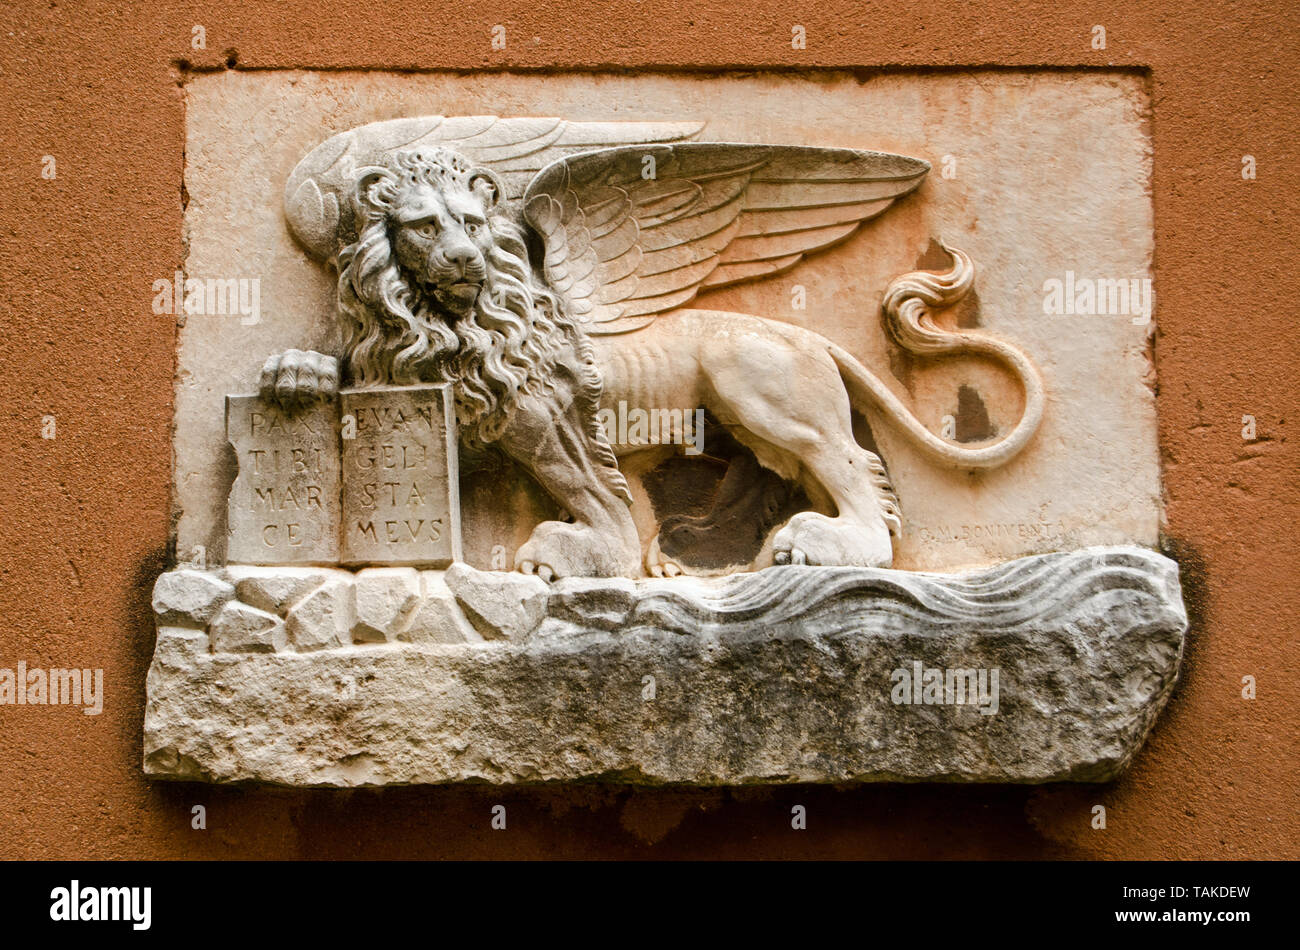 La piedra tallada león alado, símbolo de Venecia - en la pared exterior de un edificio histórico en el centro de la ciudad. Foto de stock